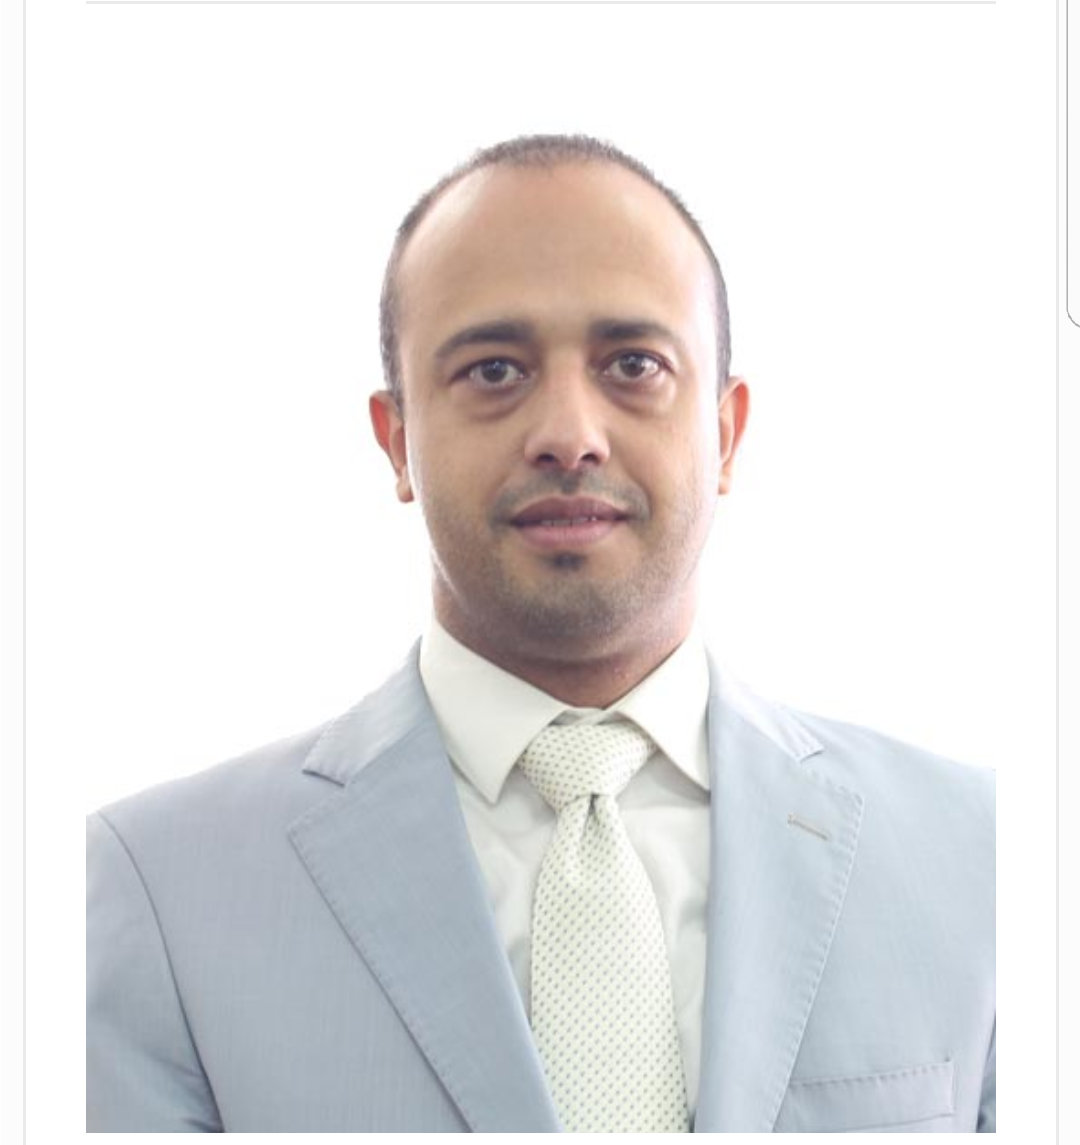 تعيين الأستاذ إبراهيم أحمد الحوثي رئيساً لمجلس إدارة البنك خلفاً للأستاذ محمد صالح اللاعي